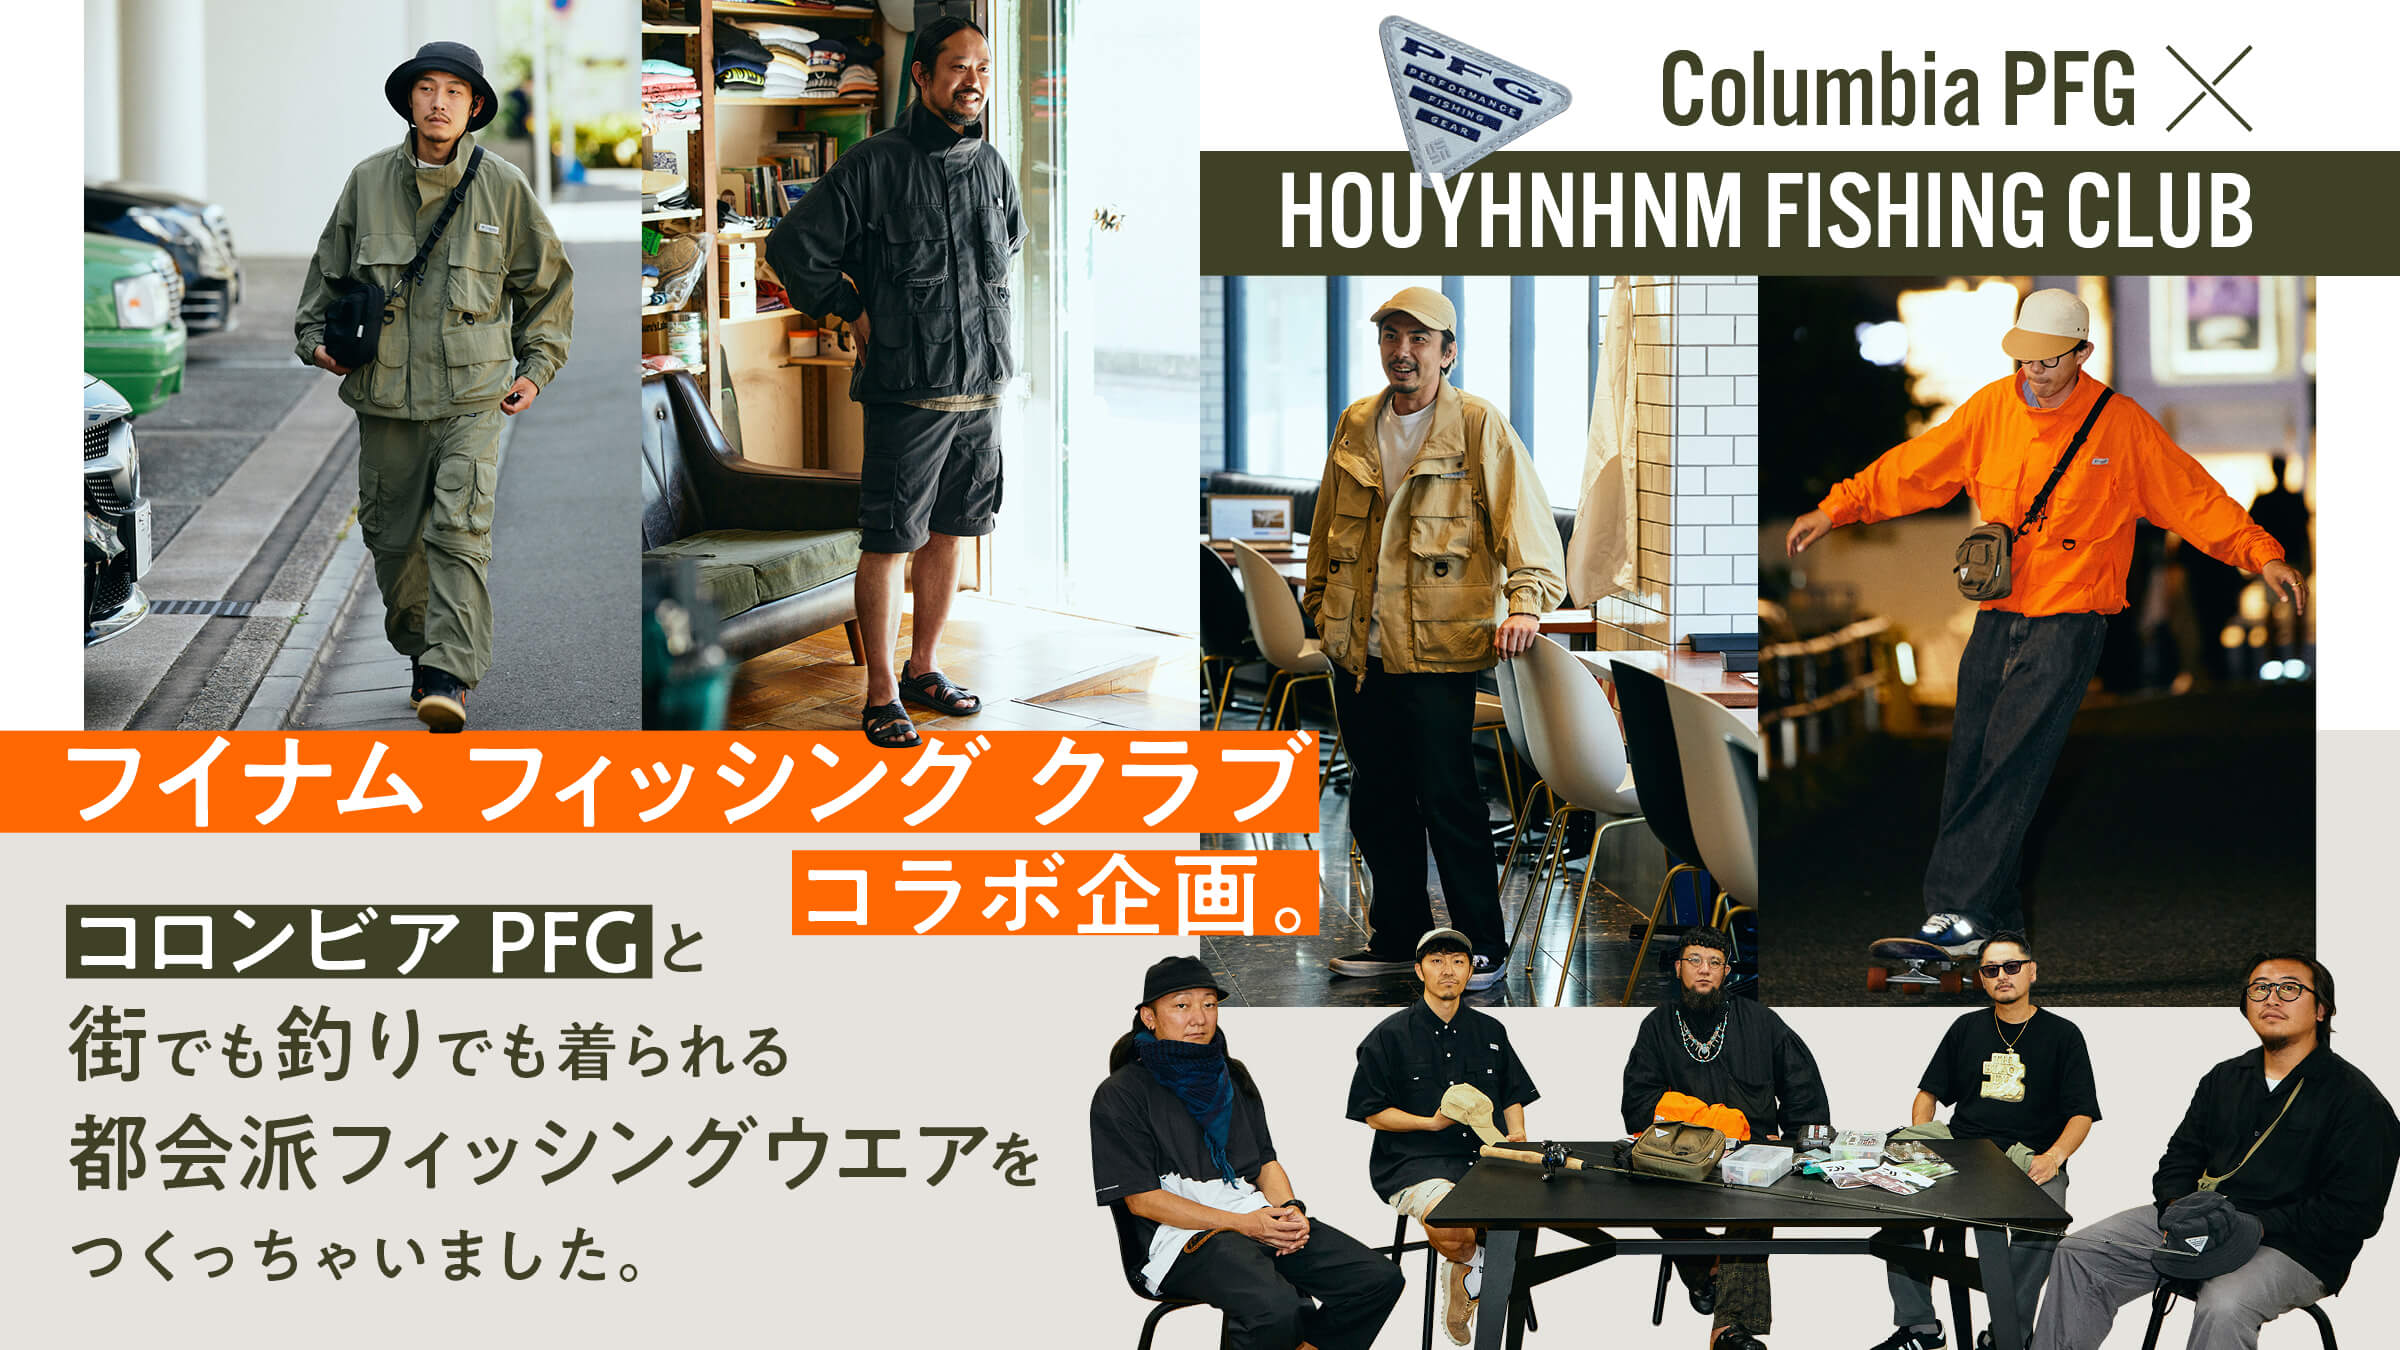 フイナム フィッシング クラブ コラボ企画。コロンビア PFGと街でも釣りでも着られる都会派フィッシングウエアをつくっちゃいました。